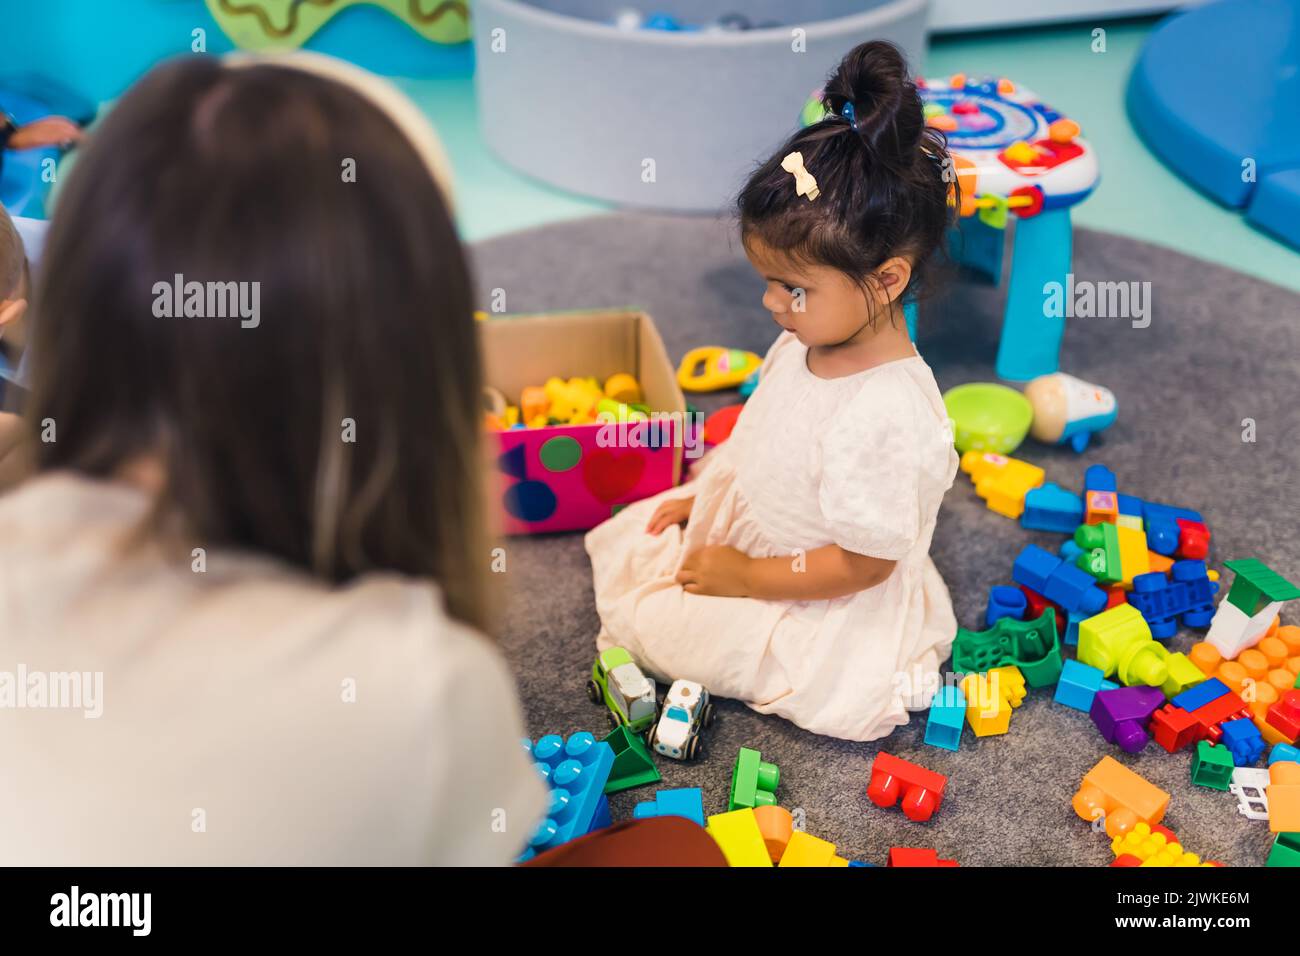 Spielerisch im Kindergarten lernen. Kleinkind kleines Mädchen und die Lehrerin spielen mit bunten Kunststoff-Spielhäusern, Bausteinen, Autos und Booten. Entwicklung von Phantasie, Kreativität, Feinmotorik und grobmotorischen Fähigkeiten. Hochwertige Fotos Stockfoto